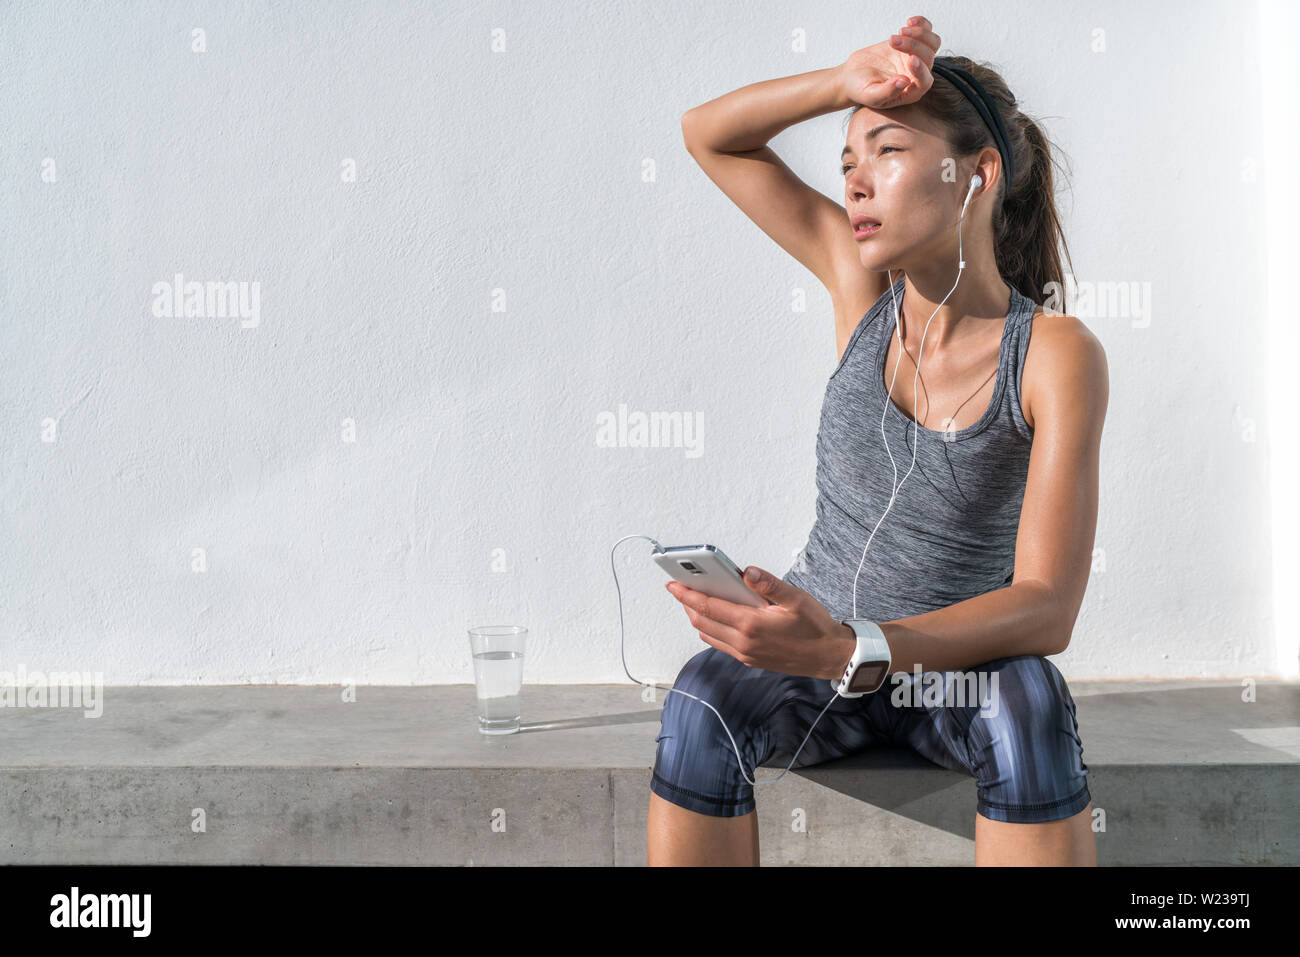 Stanco donna fitness sudorazione prendendo una pausa per ascoltare musica sul telefono dopo il difficile percorso di formazione. Esaurito Asian runner disidratato sensazione di stanchezza e disidratazione dal lavoro in palestra. Foto Stock